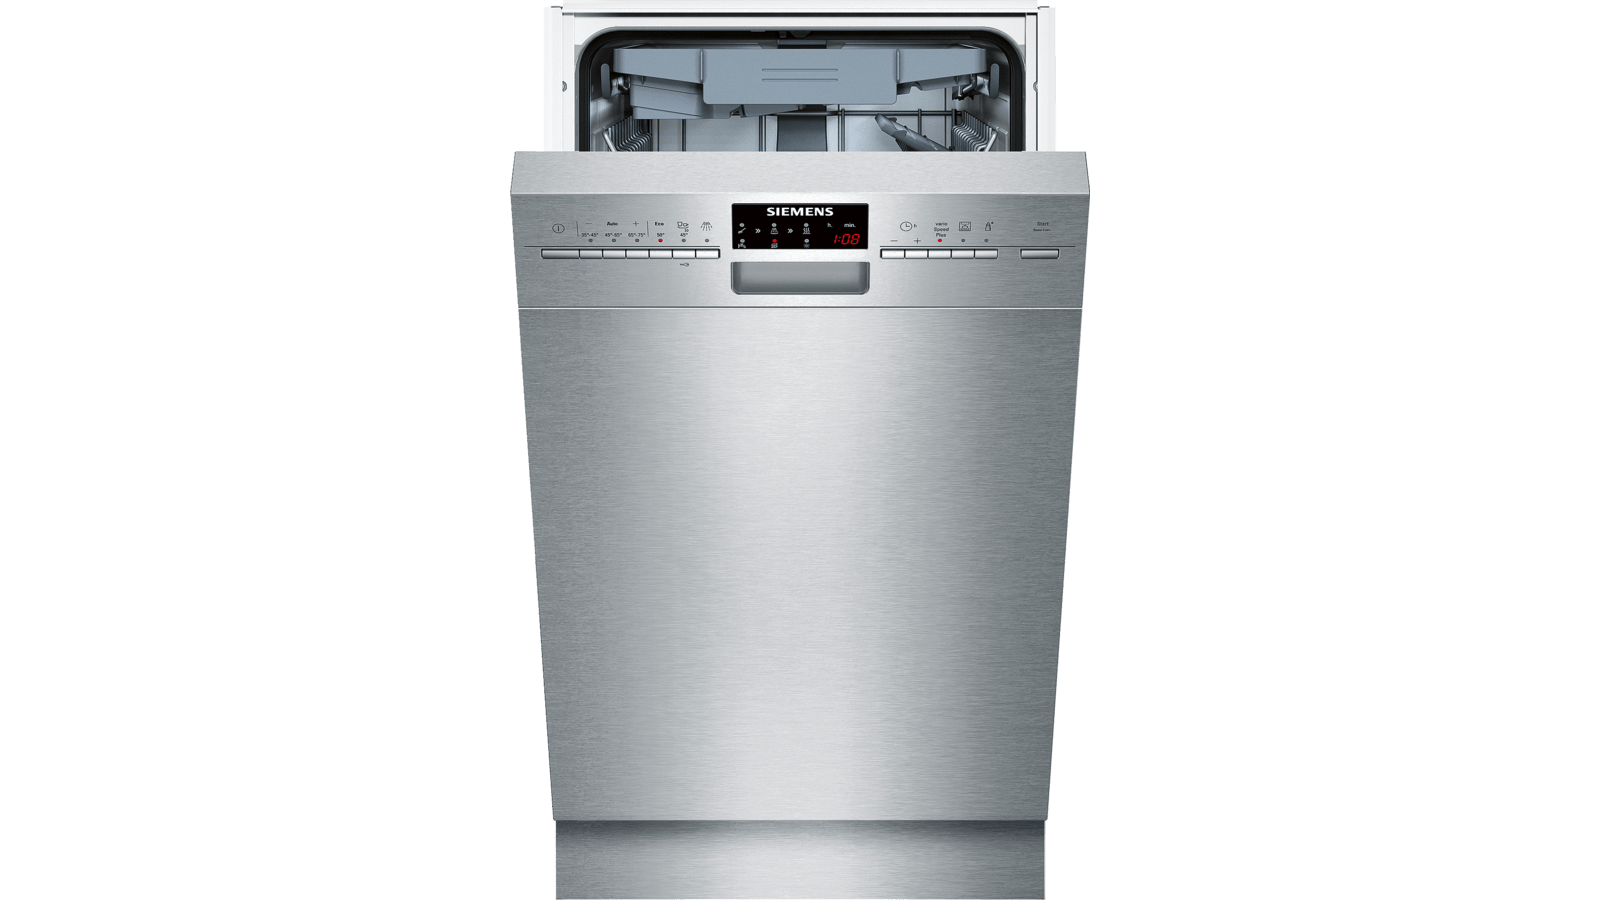 Встроенная посудомойка 45 см рейтинг. Посудомоечная машина Siemens SR 256i00 te. Siemens iq500 посудомоечная машина. Посудомойка Сименс Электролюкс. Посудомойка Siemens SR 25226/06.